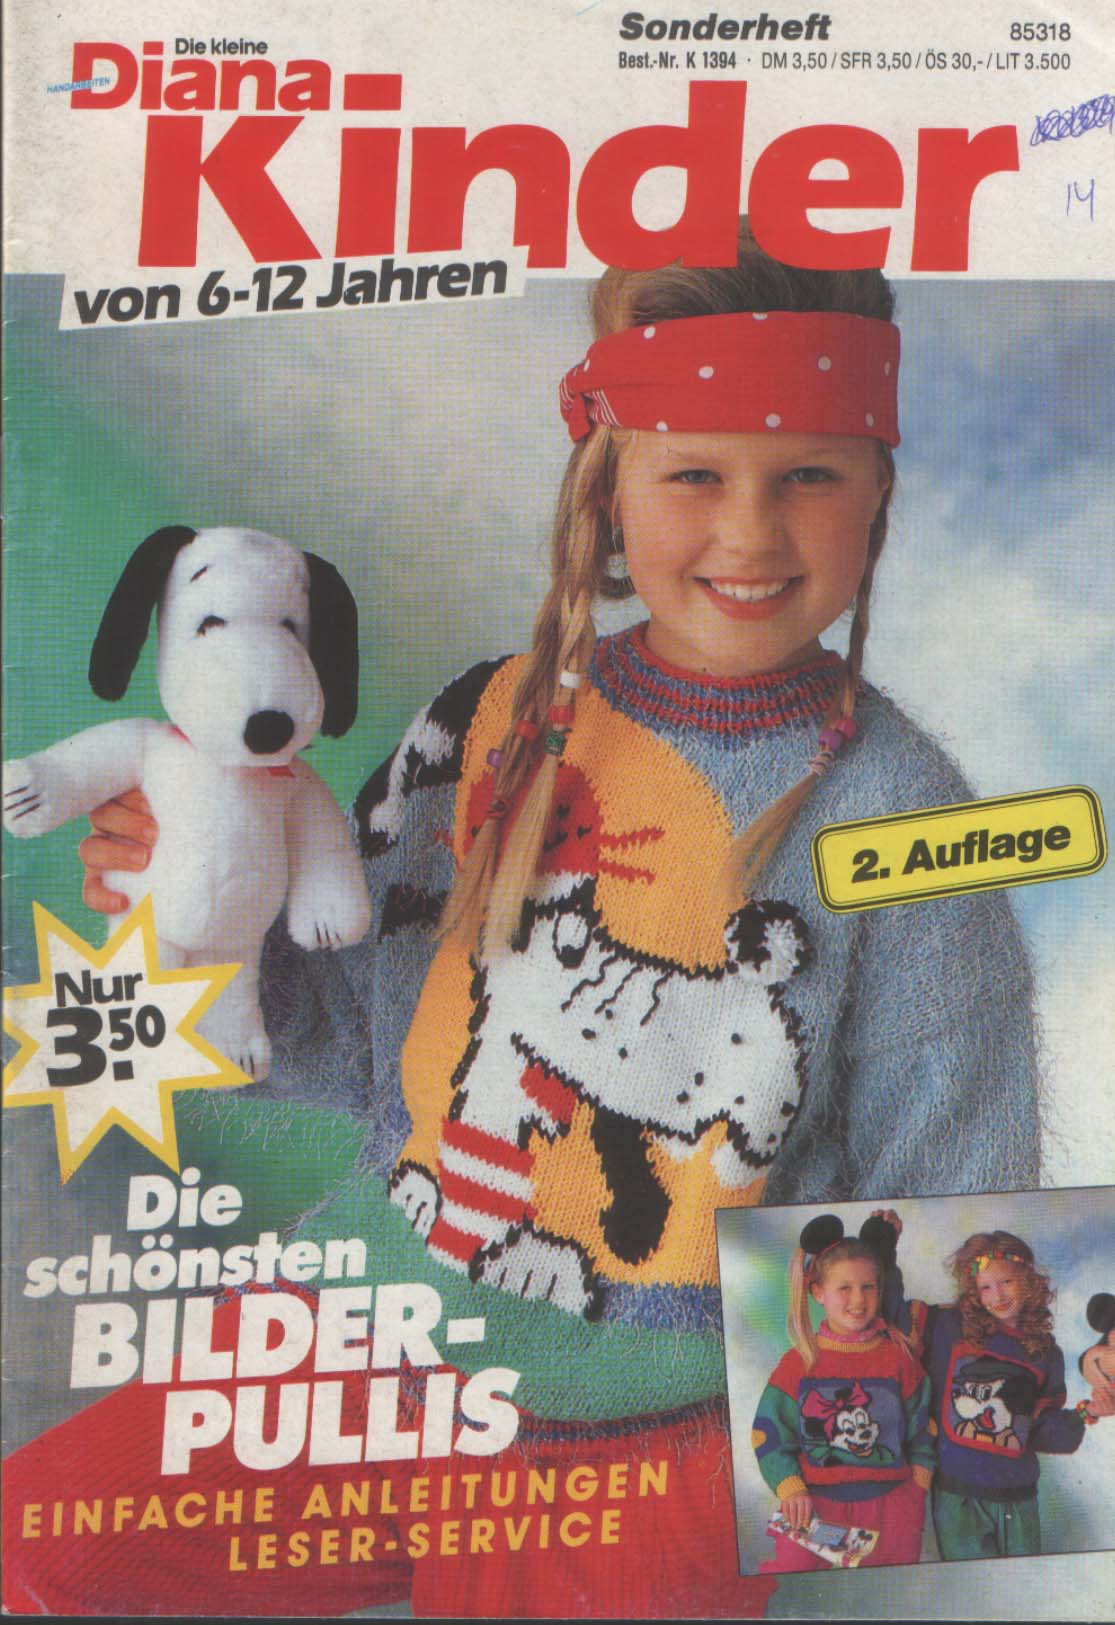 Kind magazine. Немецкие детские журналы. Иностранные журналы по вязанию для детей. Иностранные журналы вязания для детей.